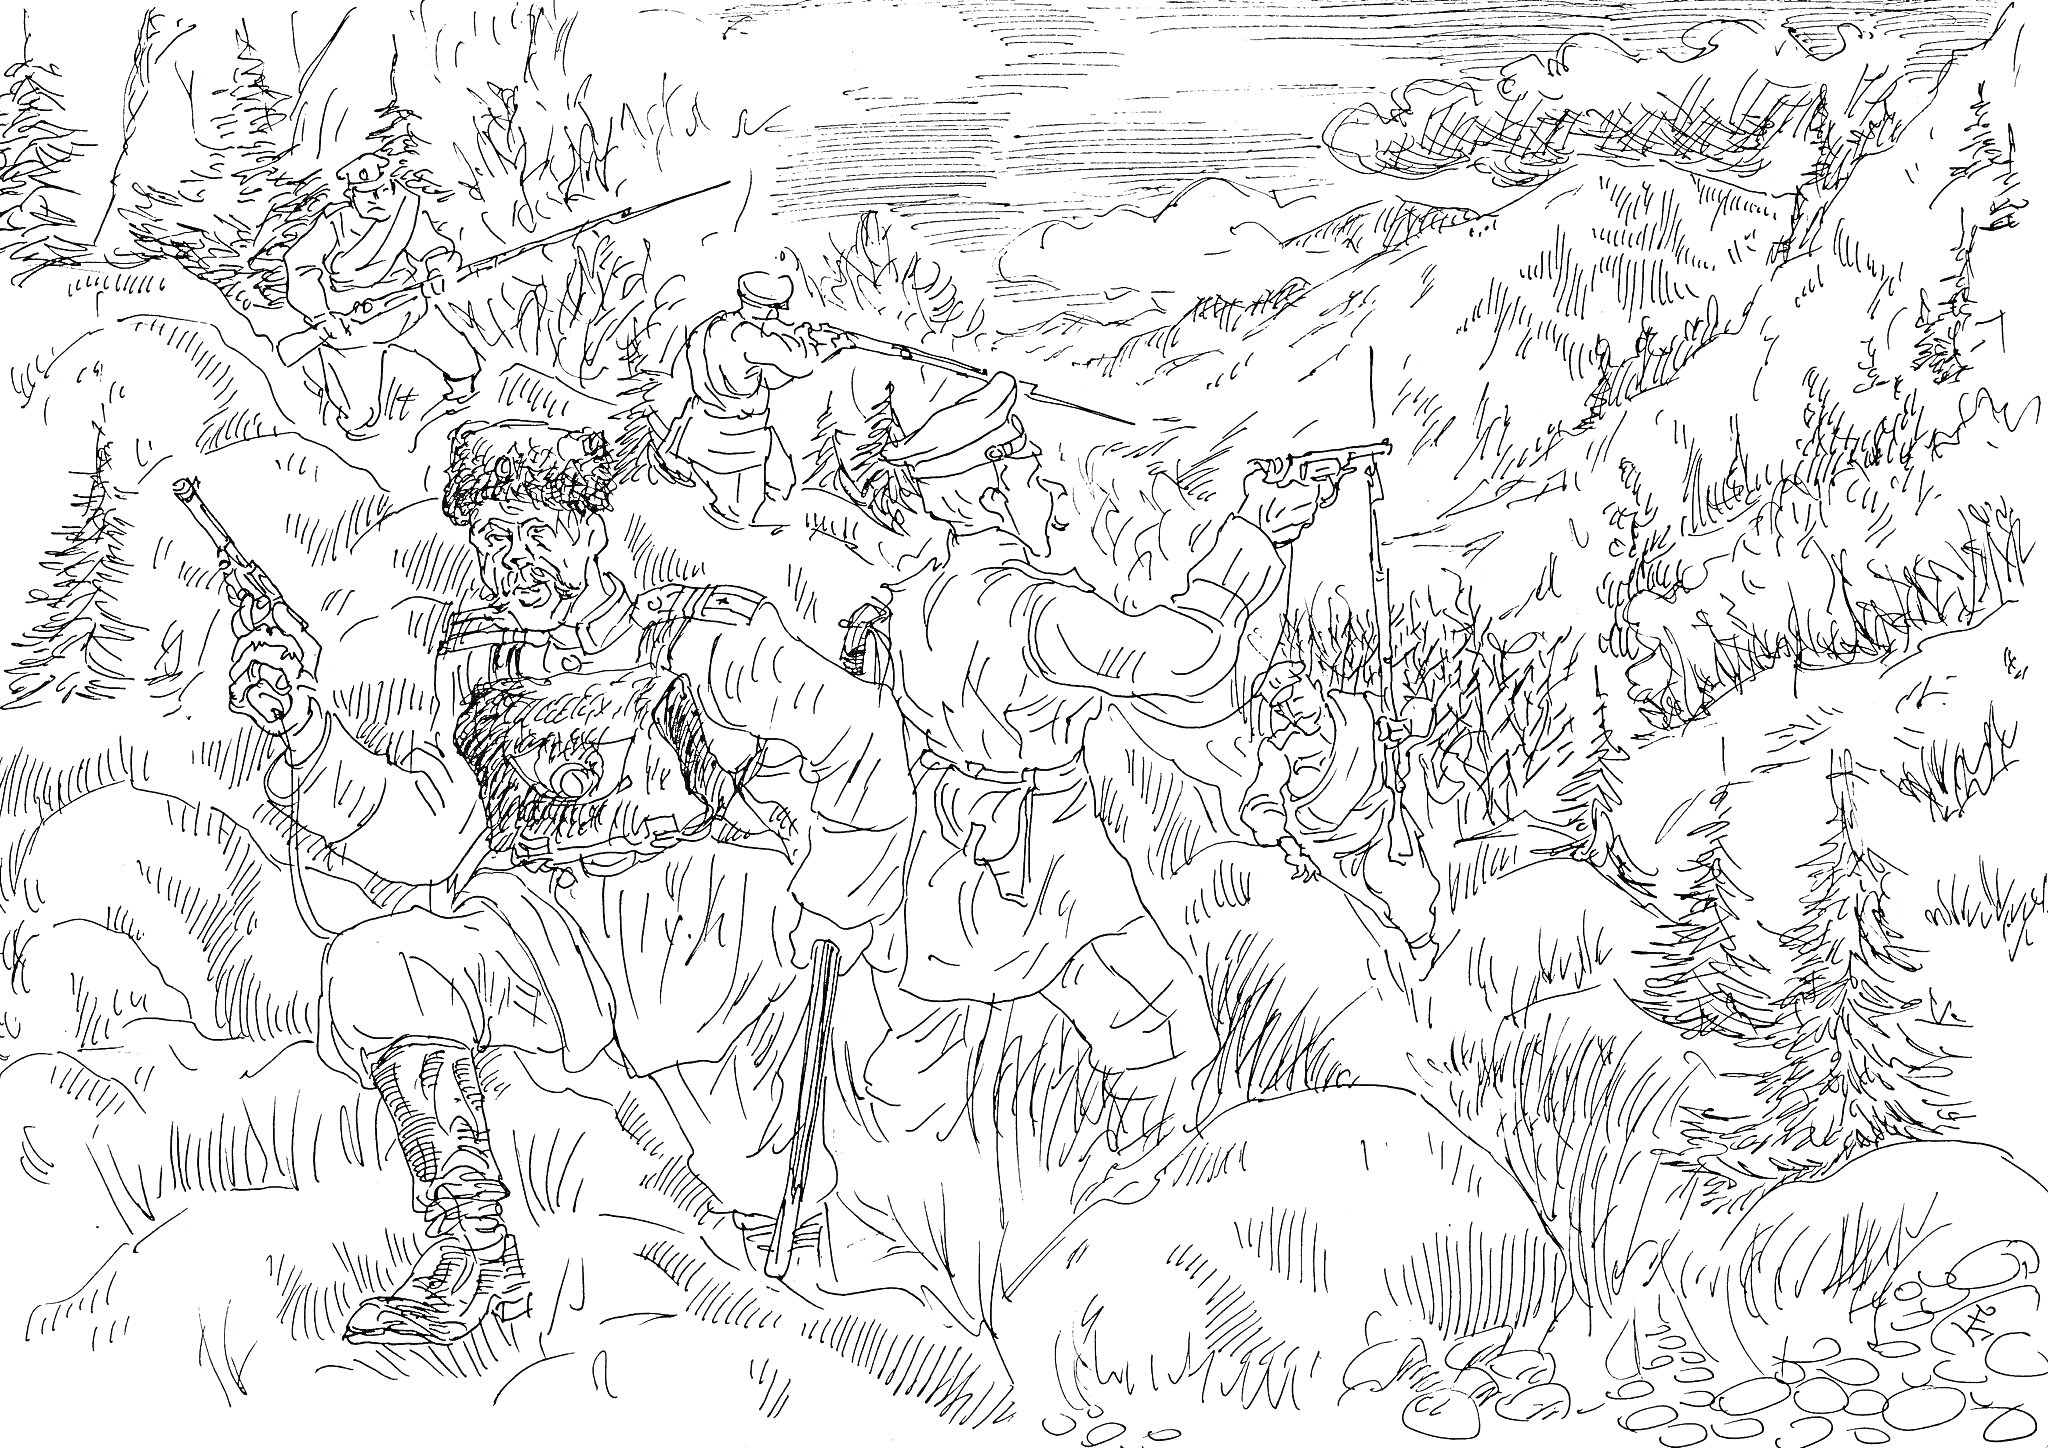 Раскраска Бородинское сражение – бой солдат на холмистой местности среди деревьев и гор. На переднем плане двое солдат ведут огонь, один из которых в традиционной казачьей форме. На заднем плане видны другие бойцы и красивая горная природа.